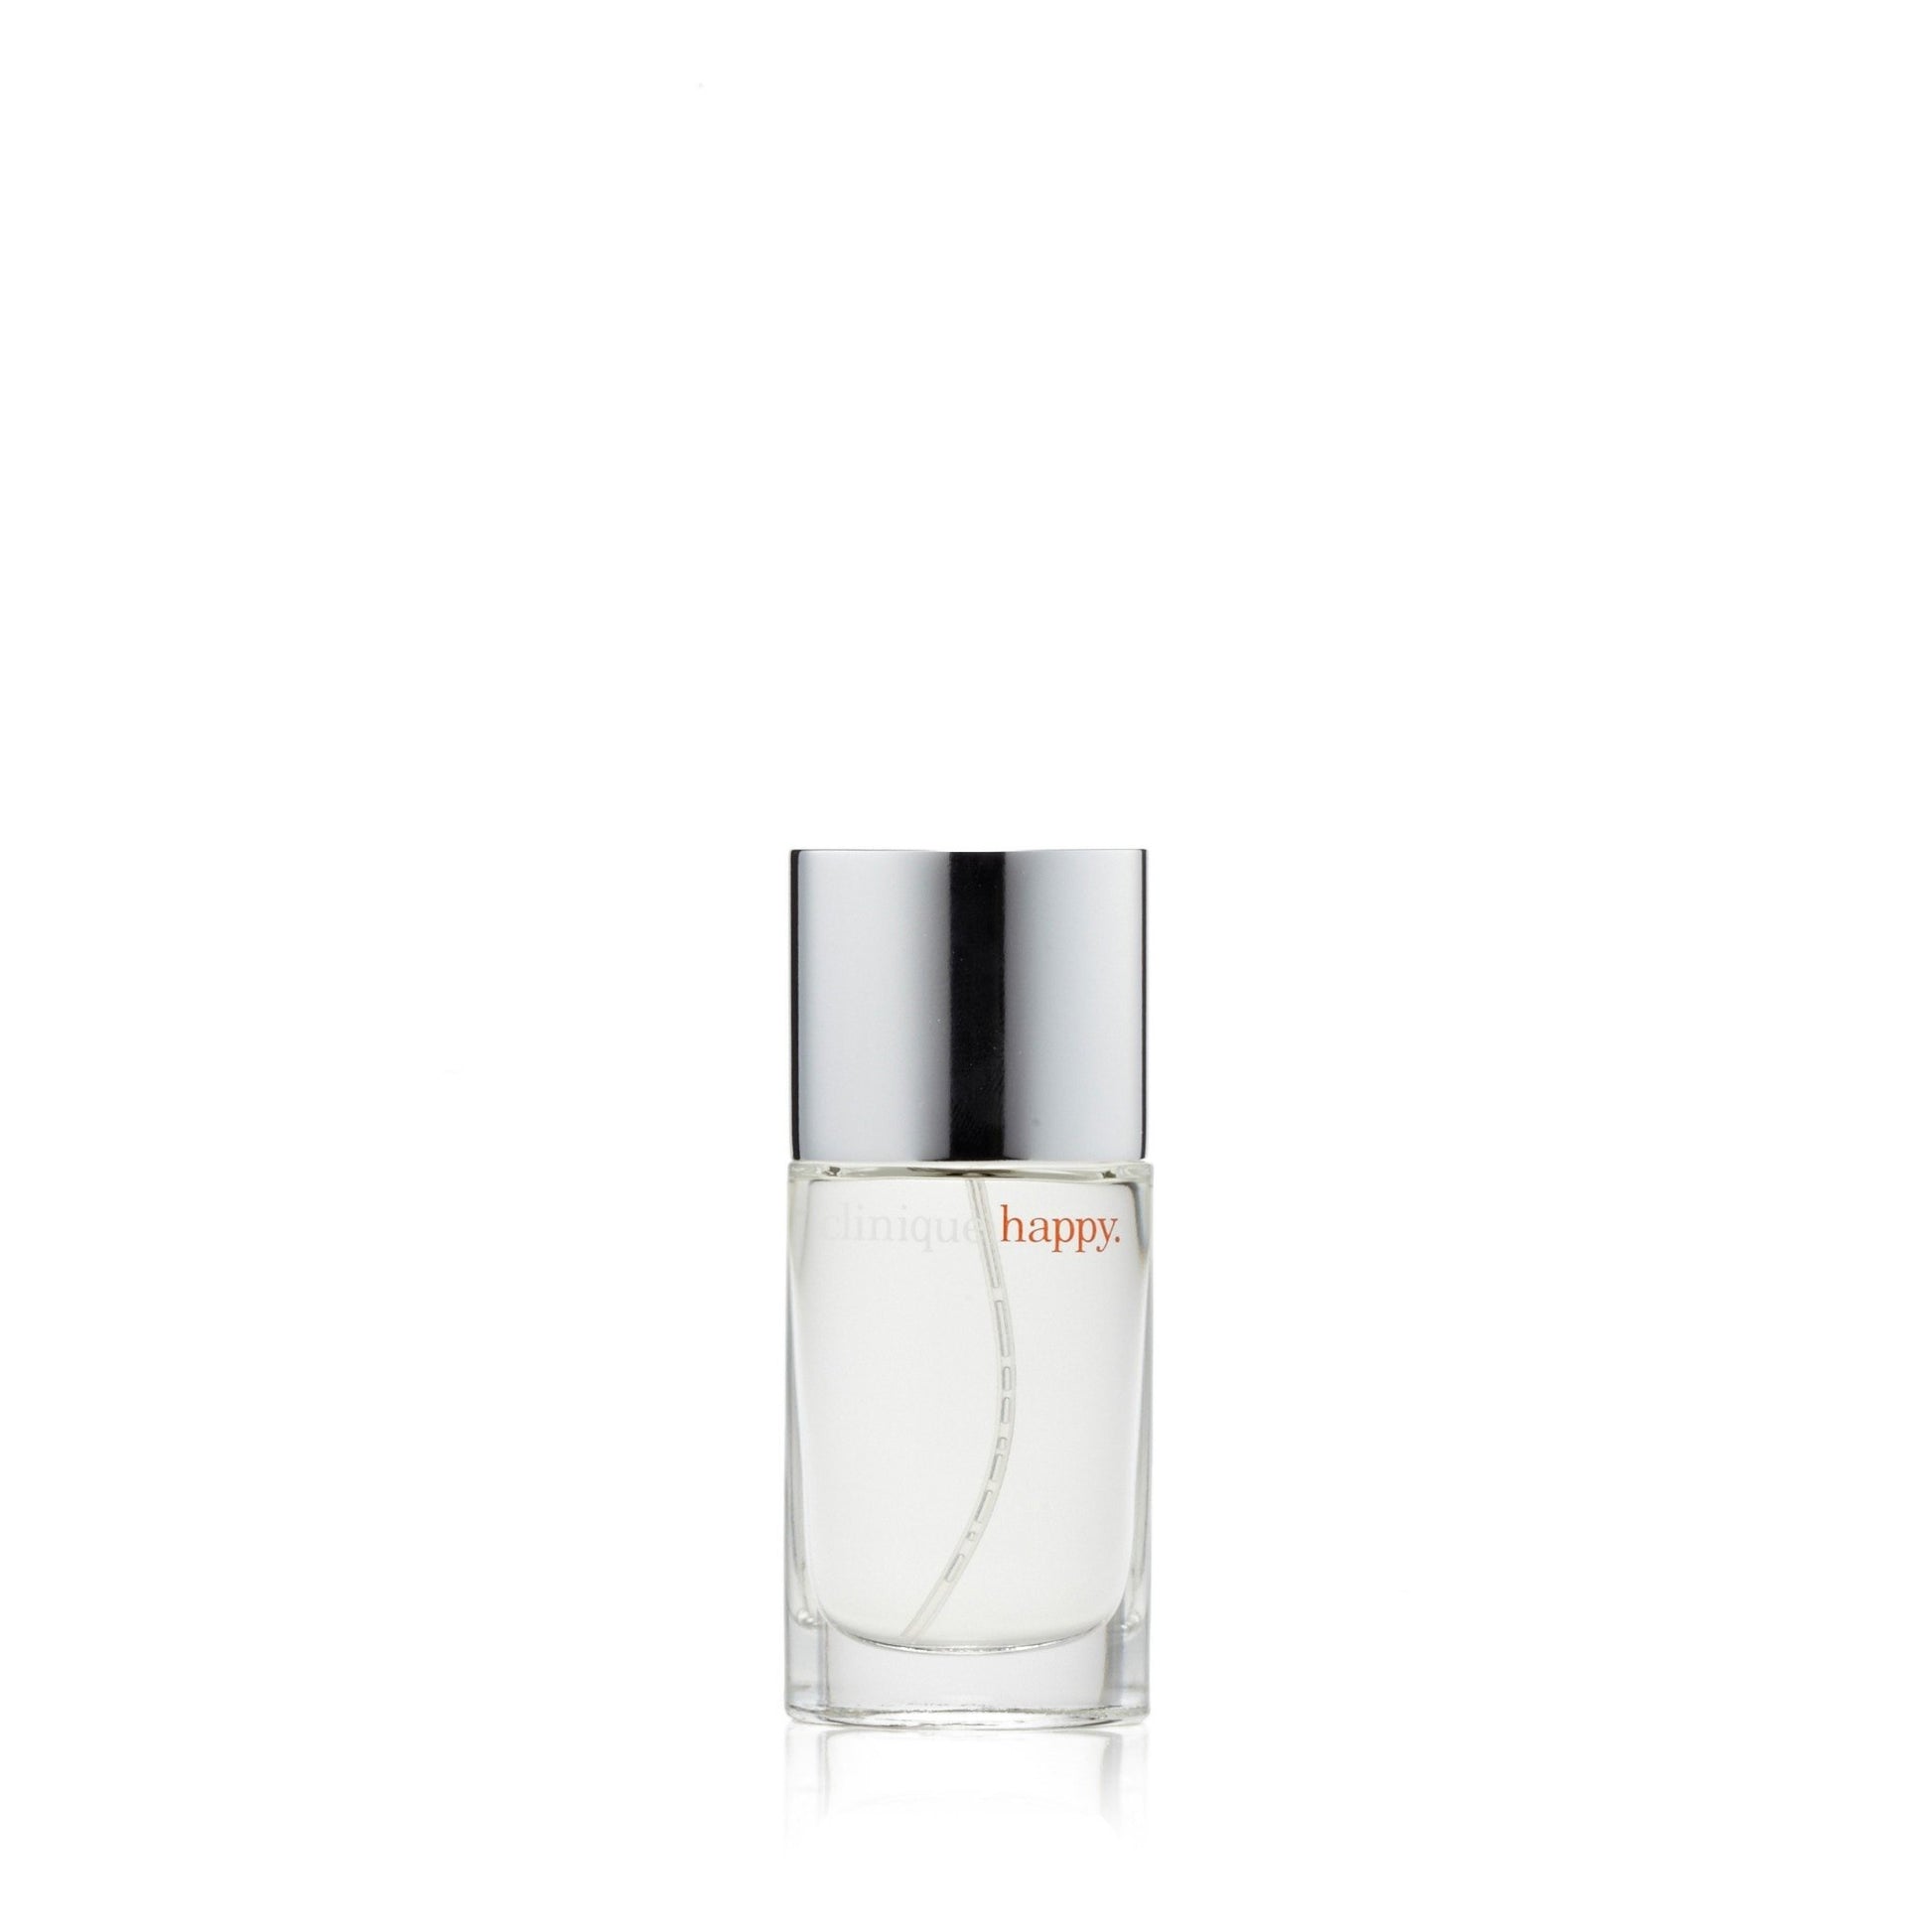 Happy Eau de Parfum Spray for Women by Clinique, Product image 6